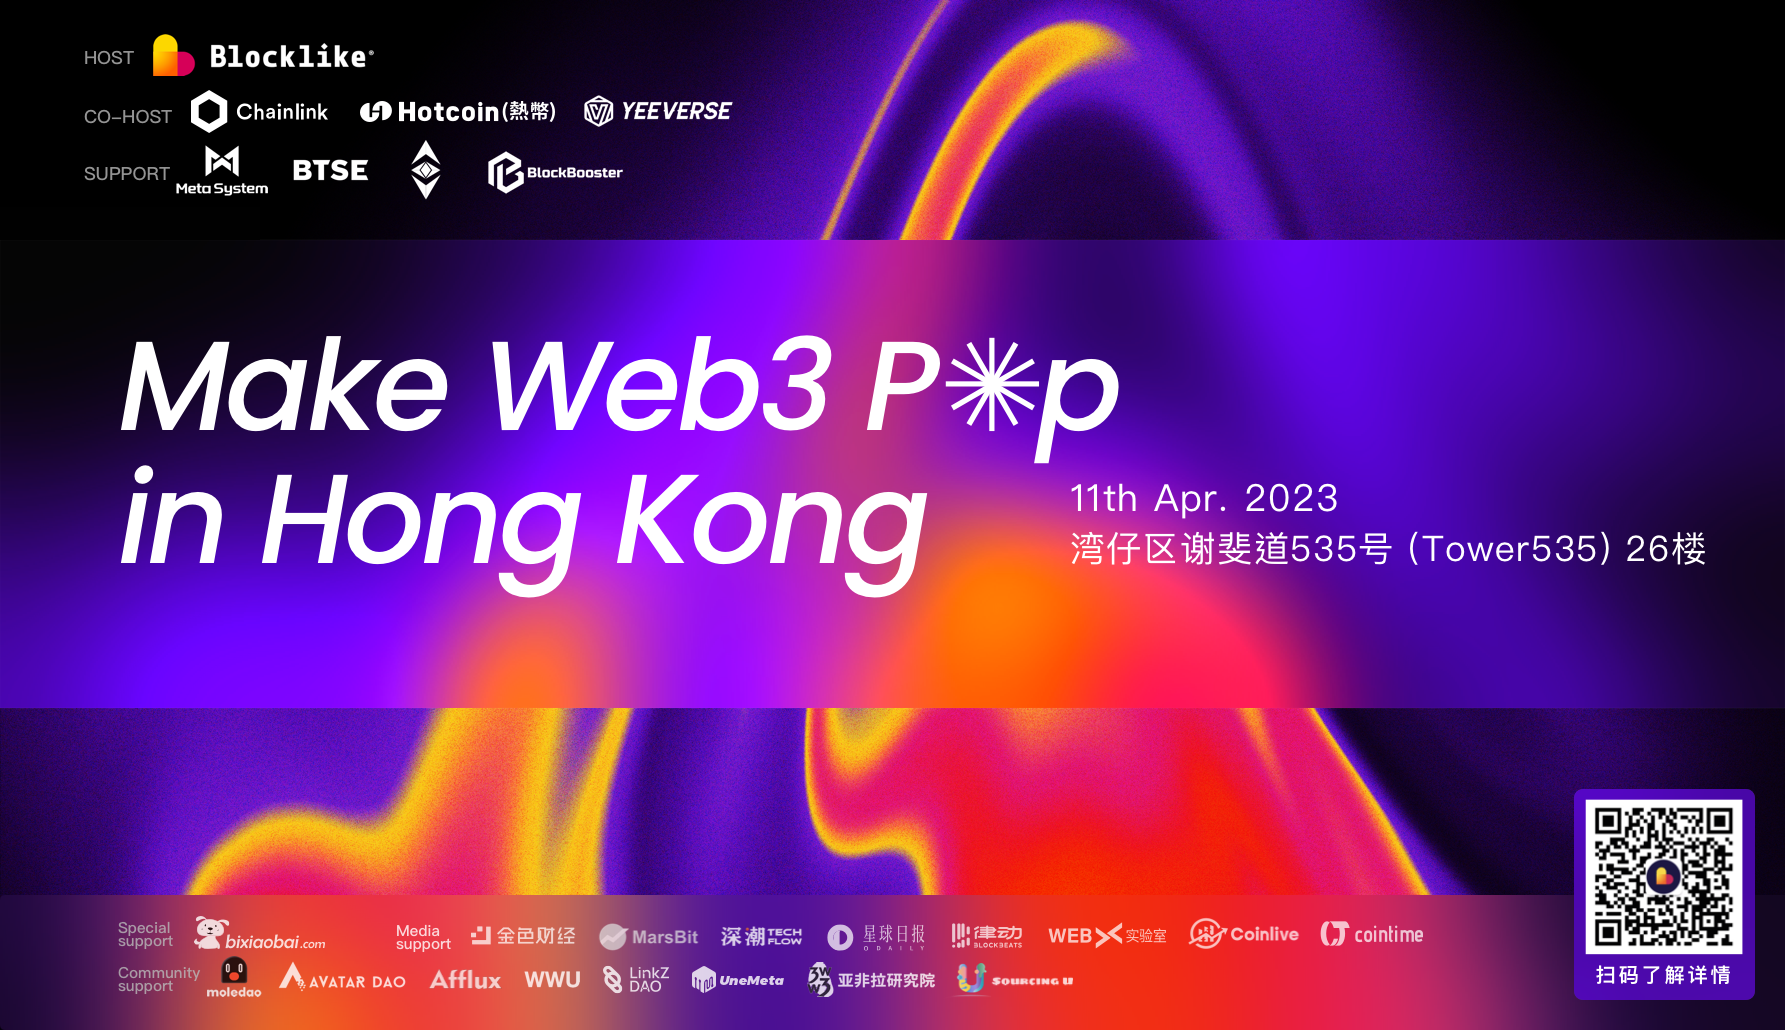 Make Web3 Pop in HK